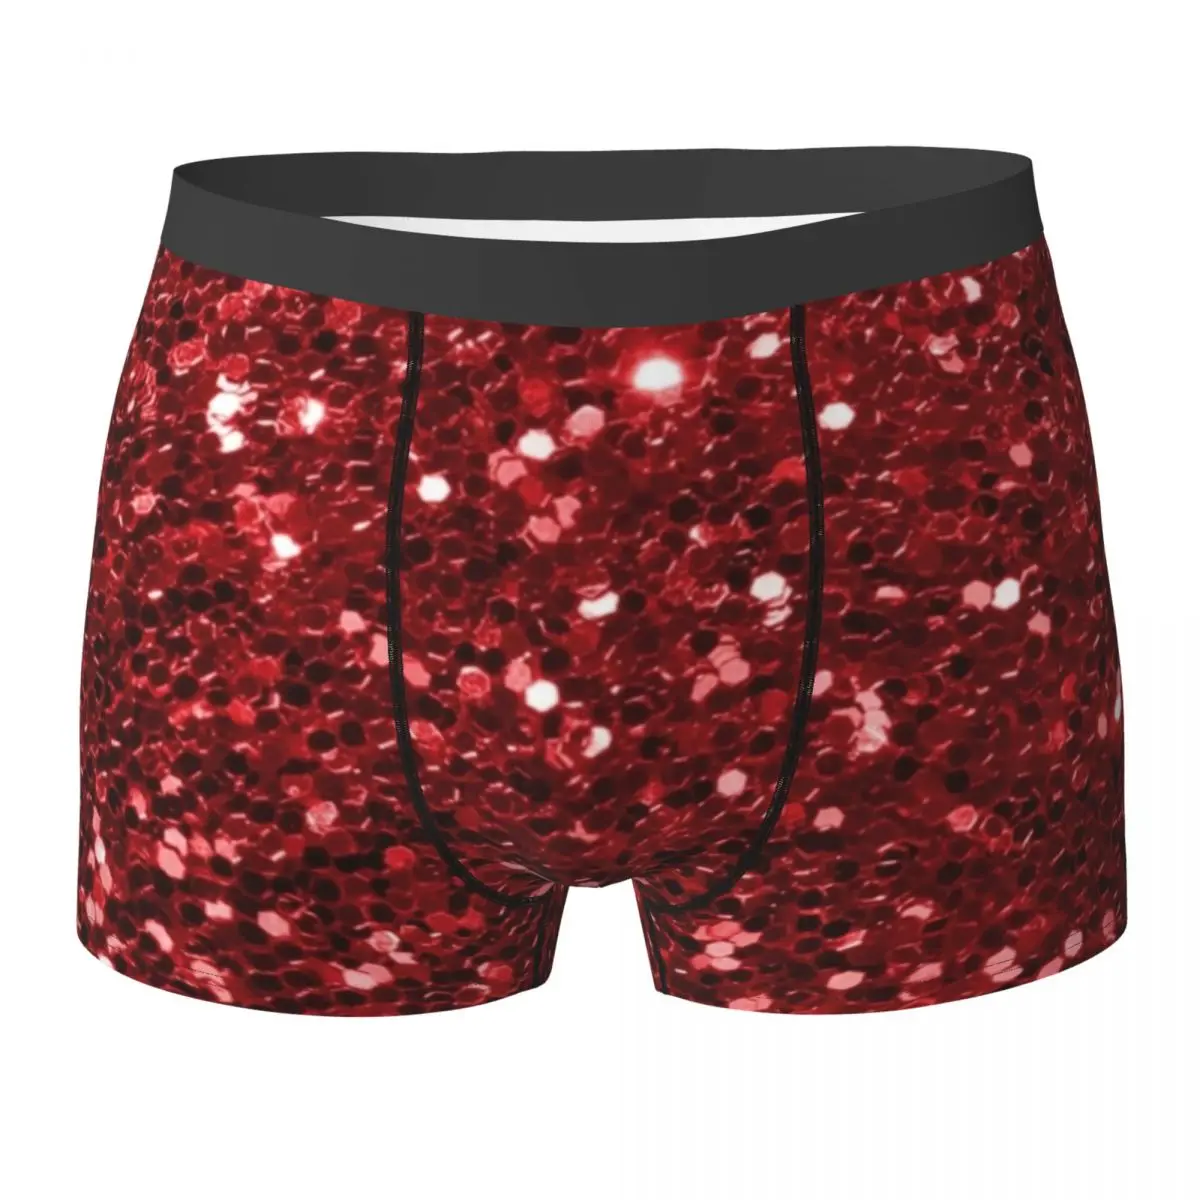 אדום תחתוני פאייטים הנוצץ בלינג הדפסת איש מכנסיים למתוח Boxershorts חם מודפס גדול גודל תחתונים